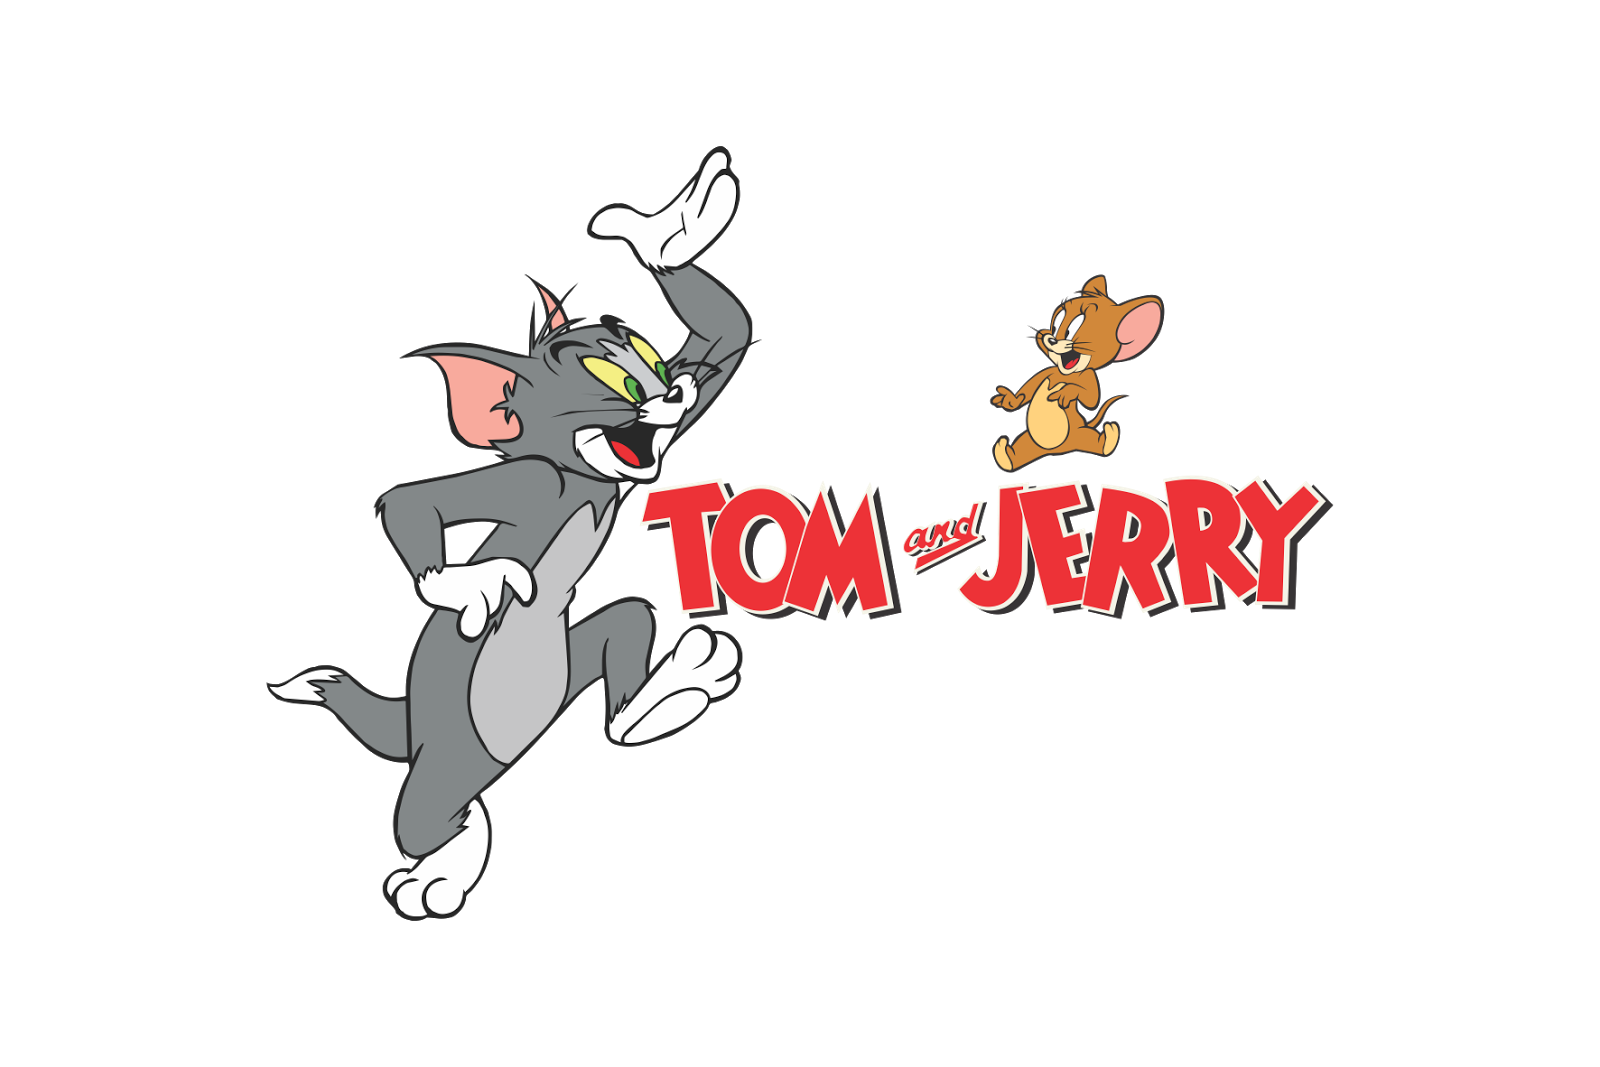 Том ru игра. Tom and Jerry логотип. Том и Джерри Tom and Jerry. Том и Джерри. Камеди.... Том и Джерри (Tom and Jerry) 1940.